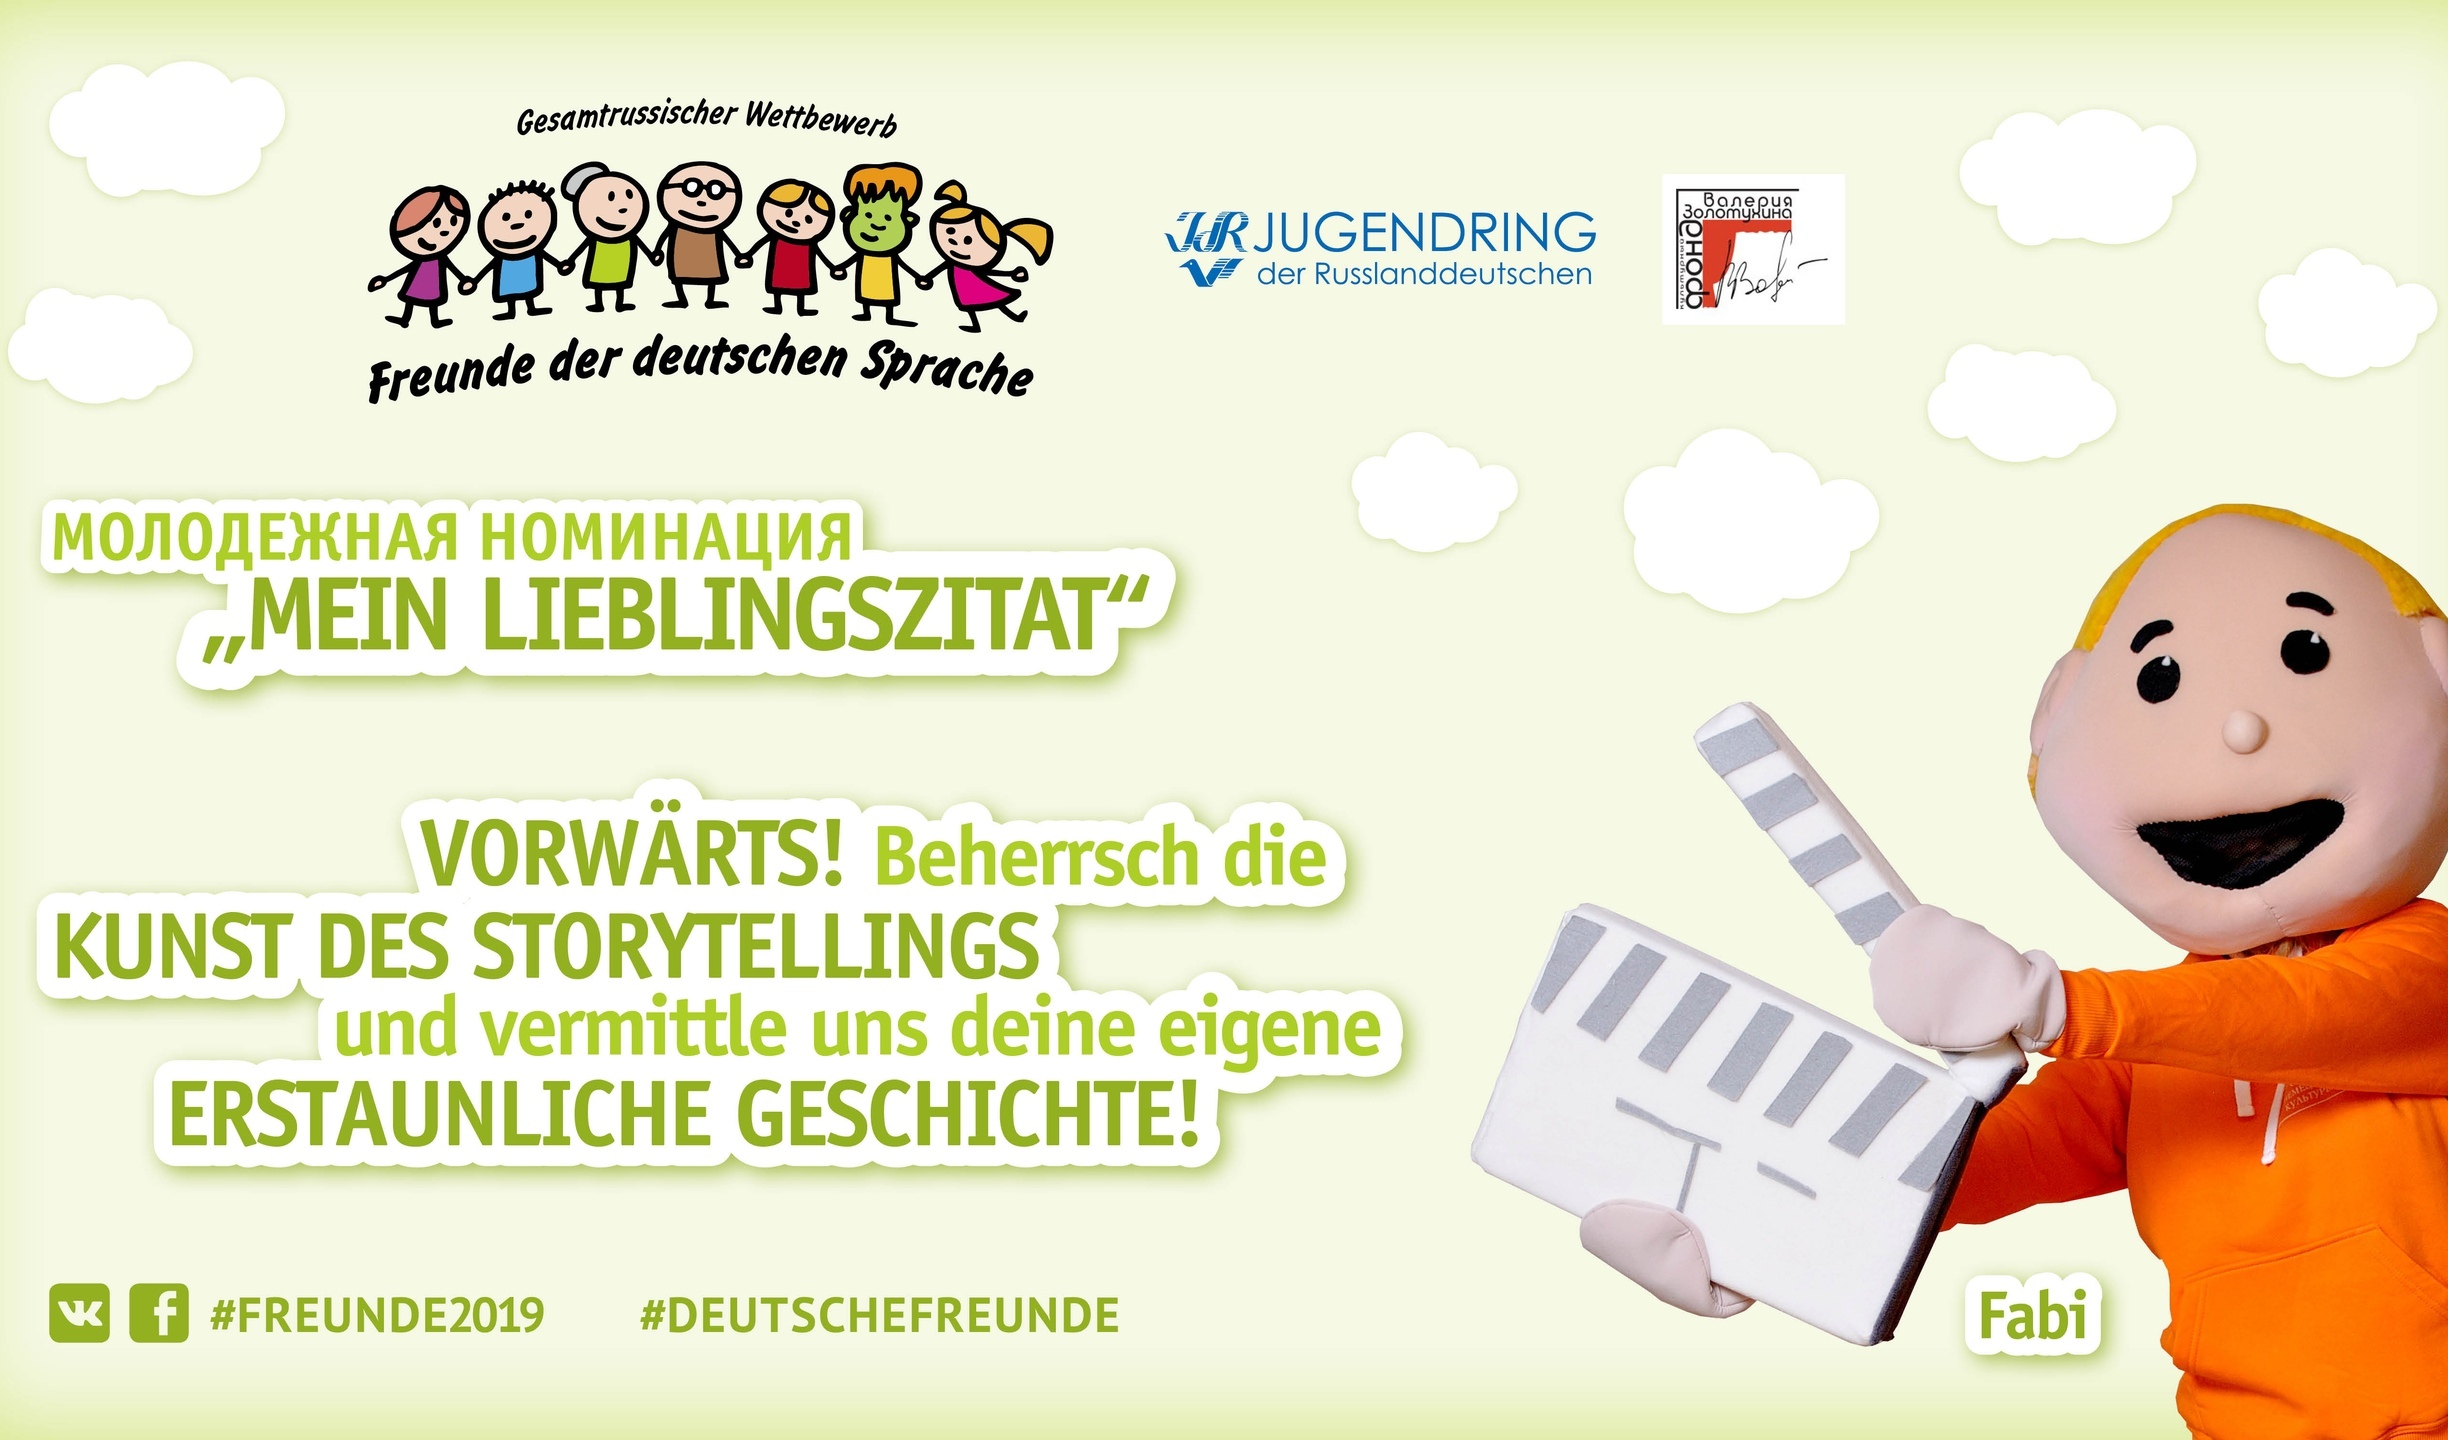 Продолжается прием заявок на участие в конкурсе «Друзья немецкого языка»!